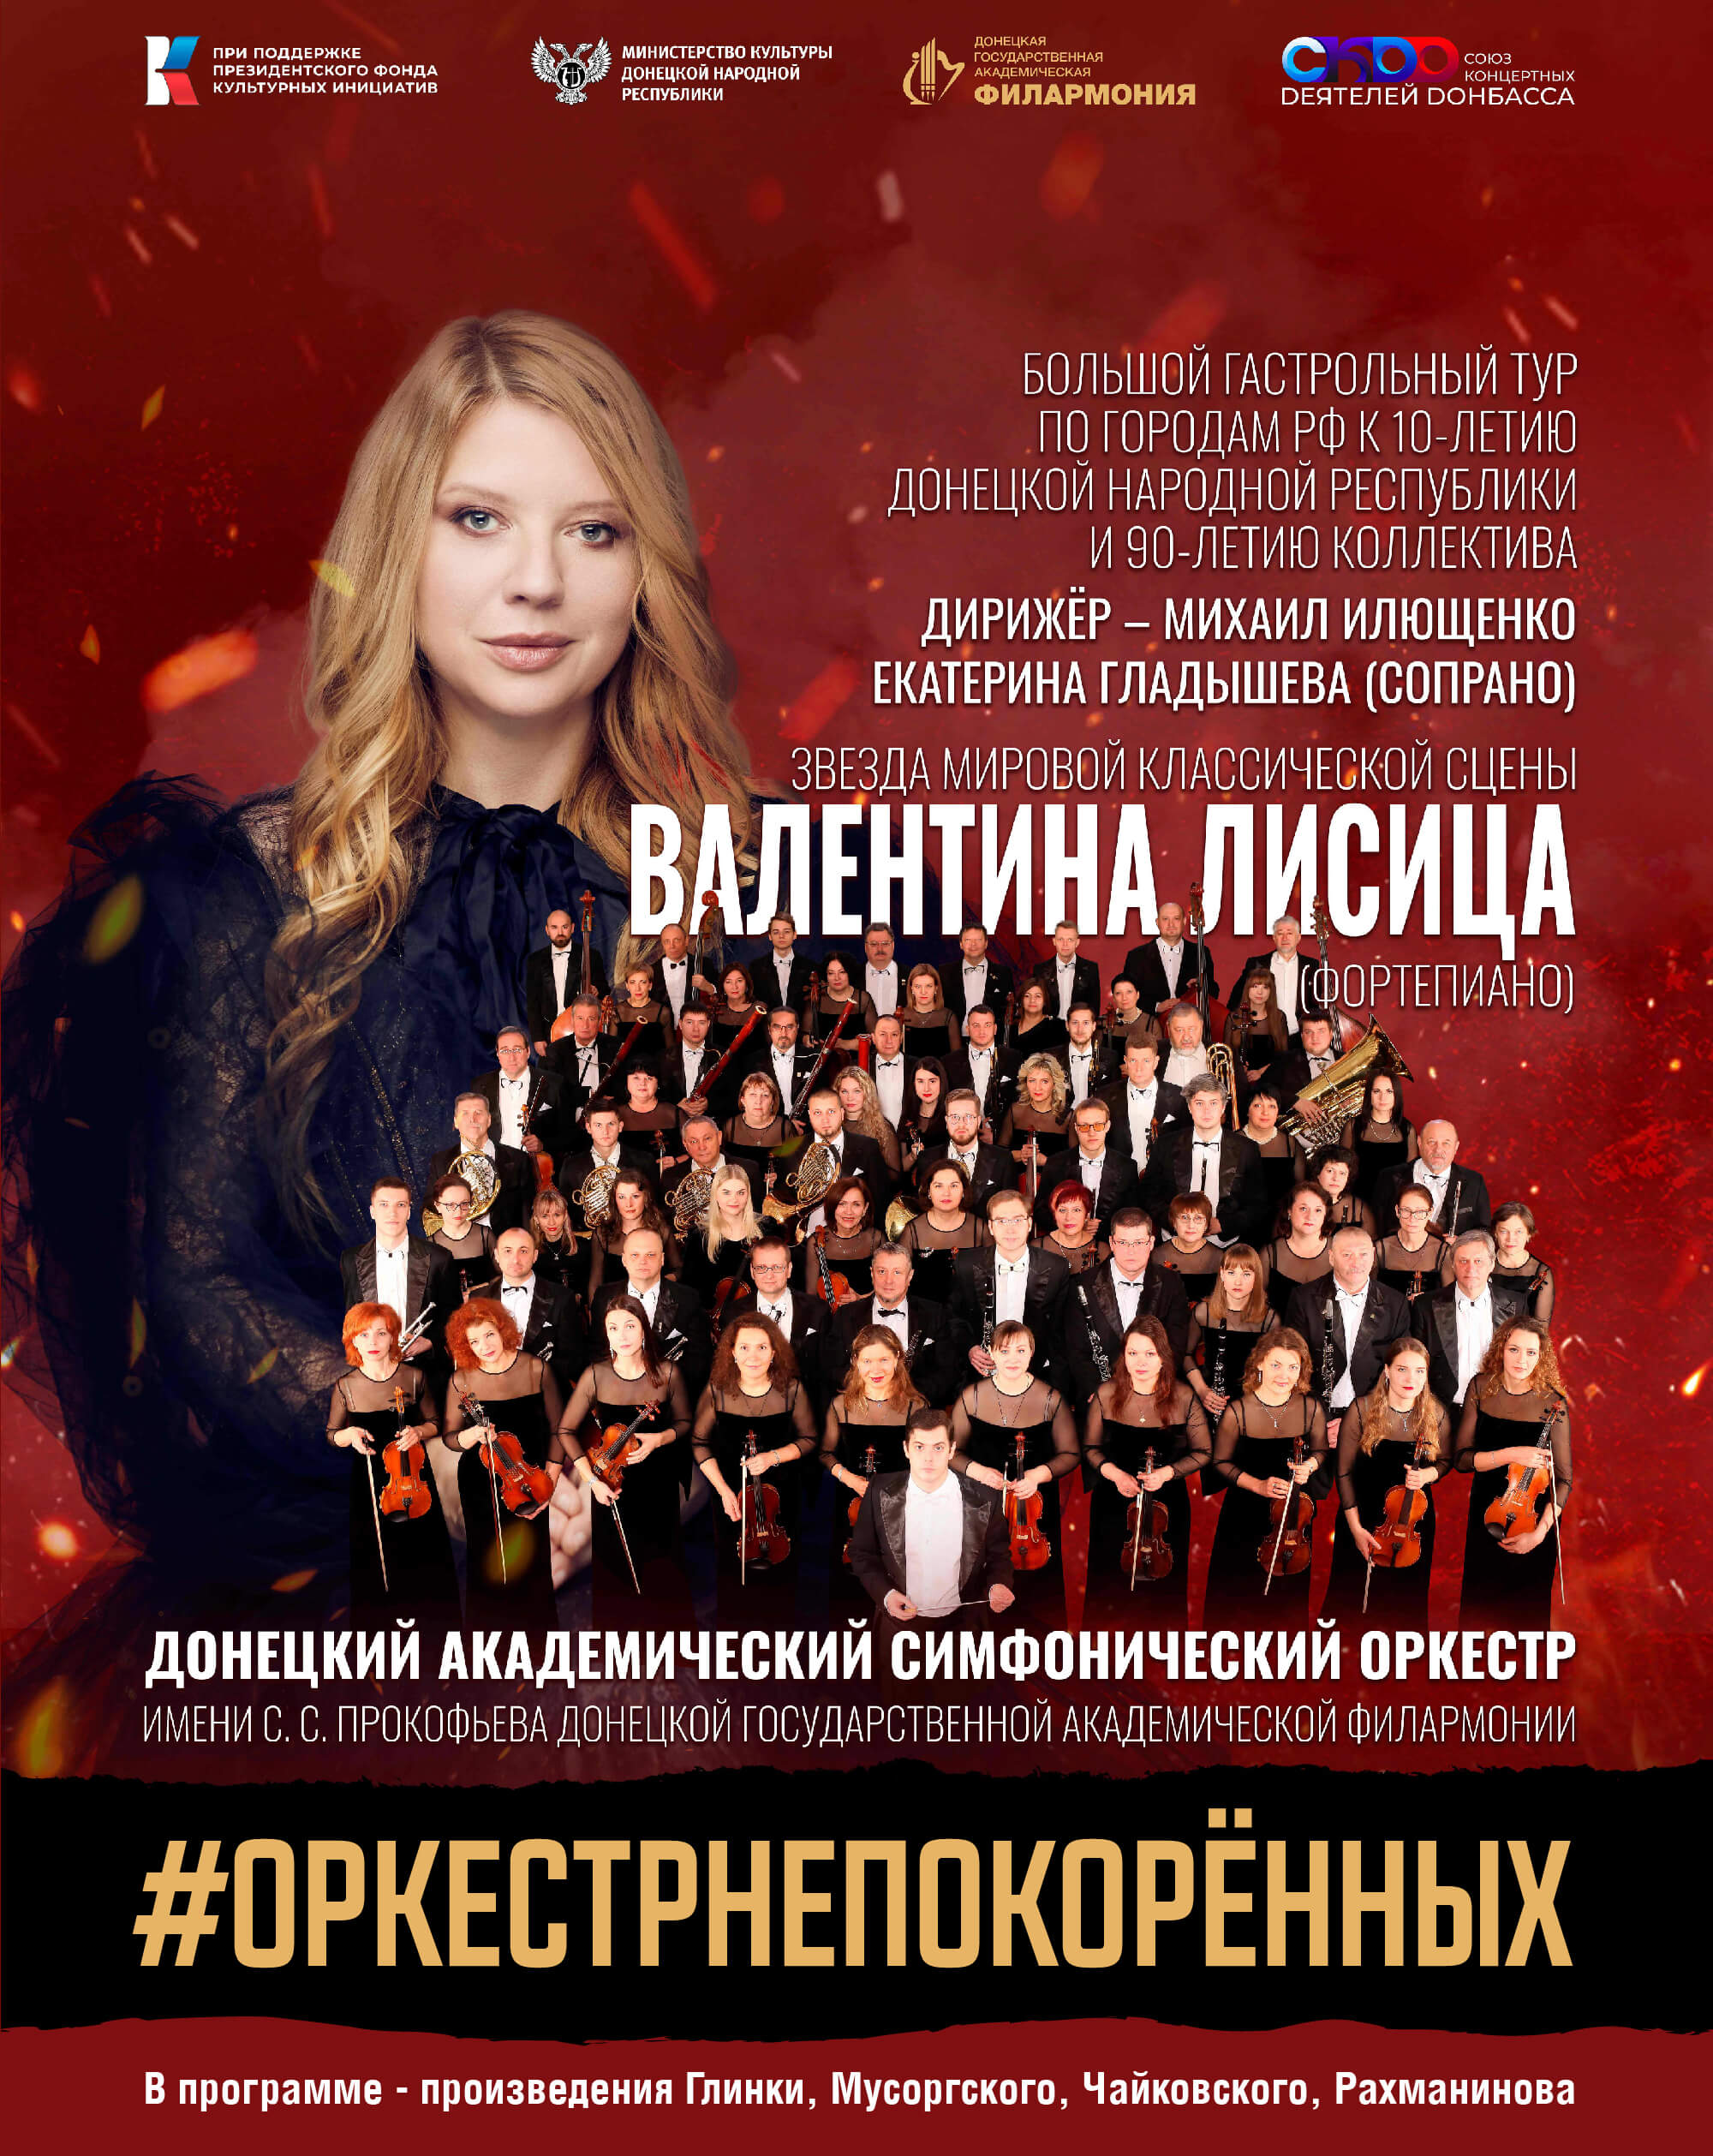 Донецкий академический симфонический оркестр имени С.С. Прокофьева